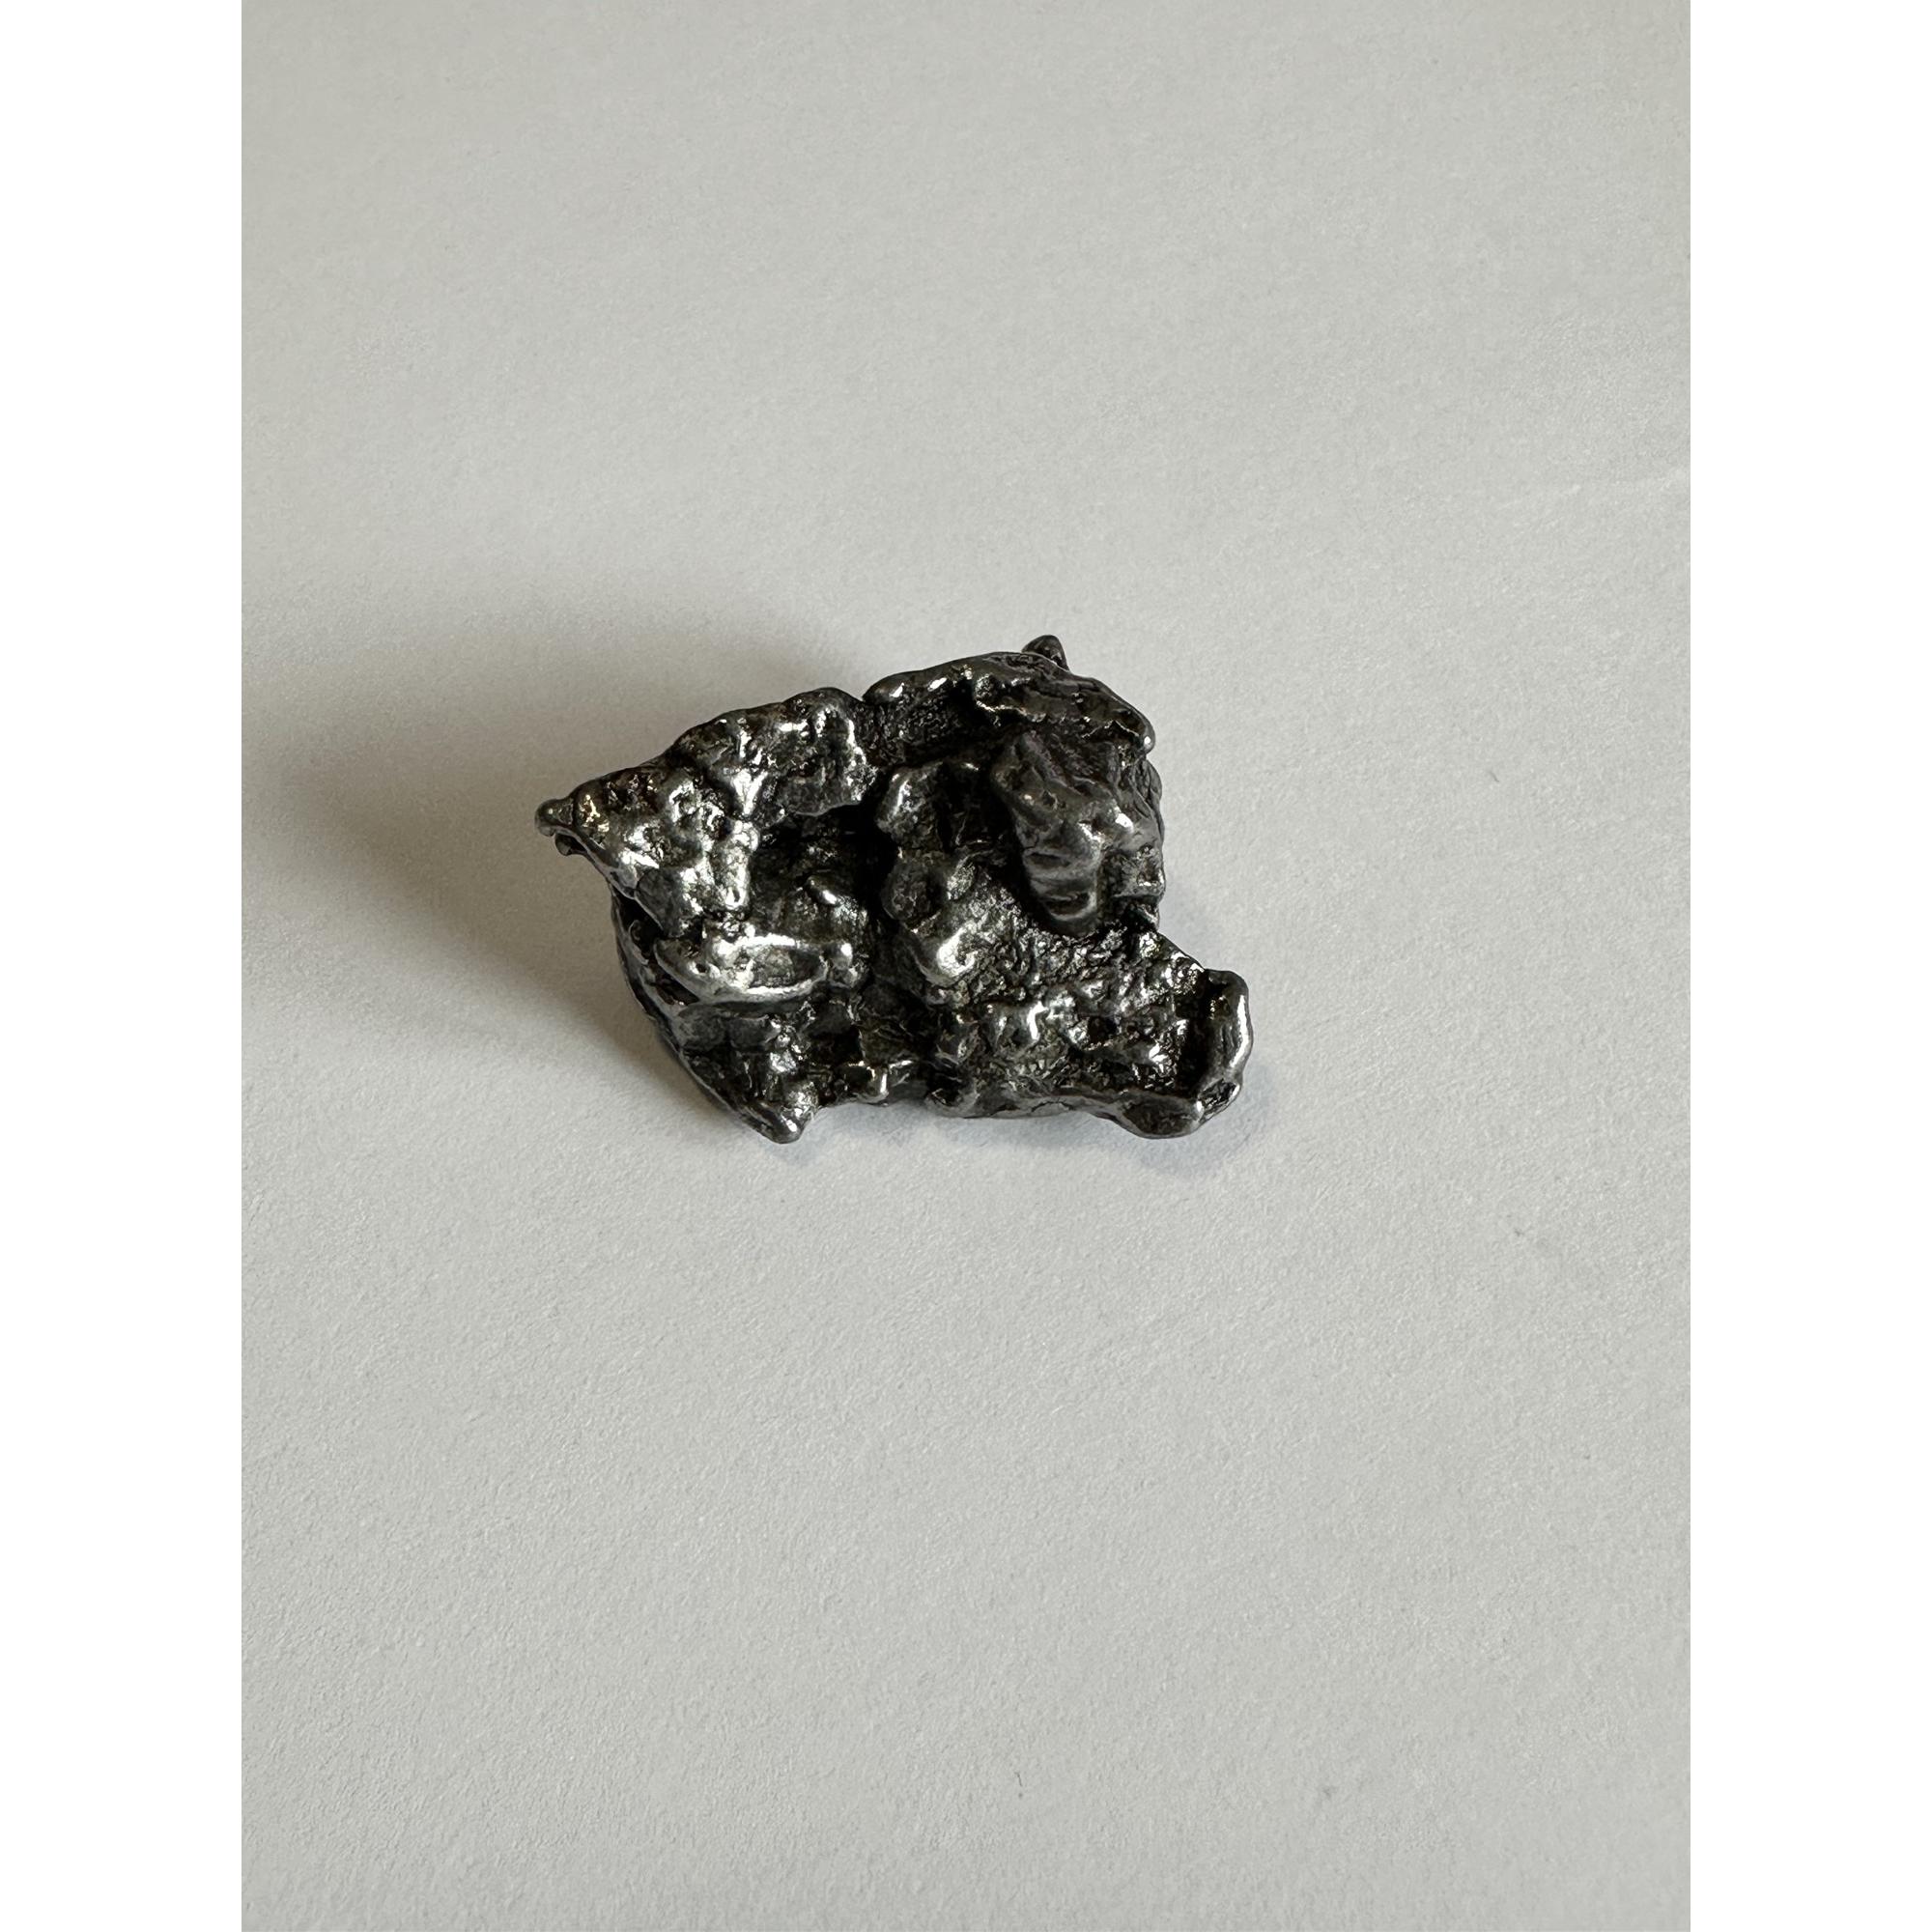 Campo del Cielo meteorite, Space rock, Argentina Prehistoric Online